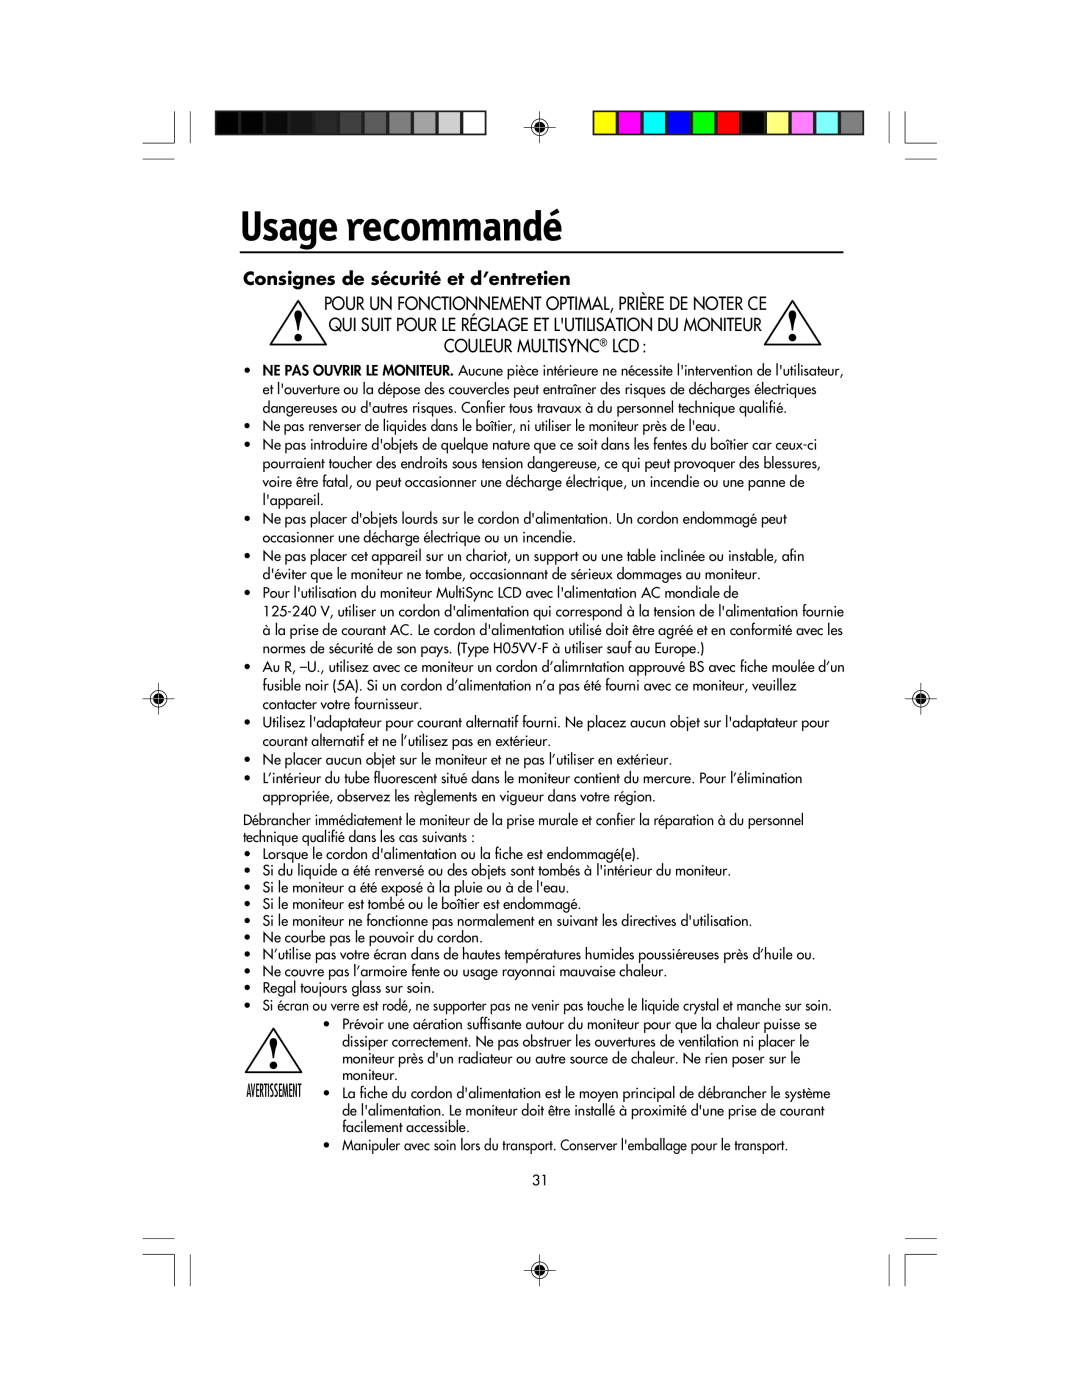 NEC LCD1920NX manual Usage recommandé, Consignes de sécurité et d’entretien 